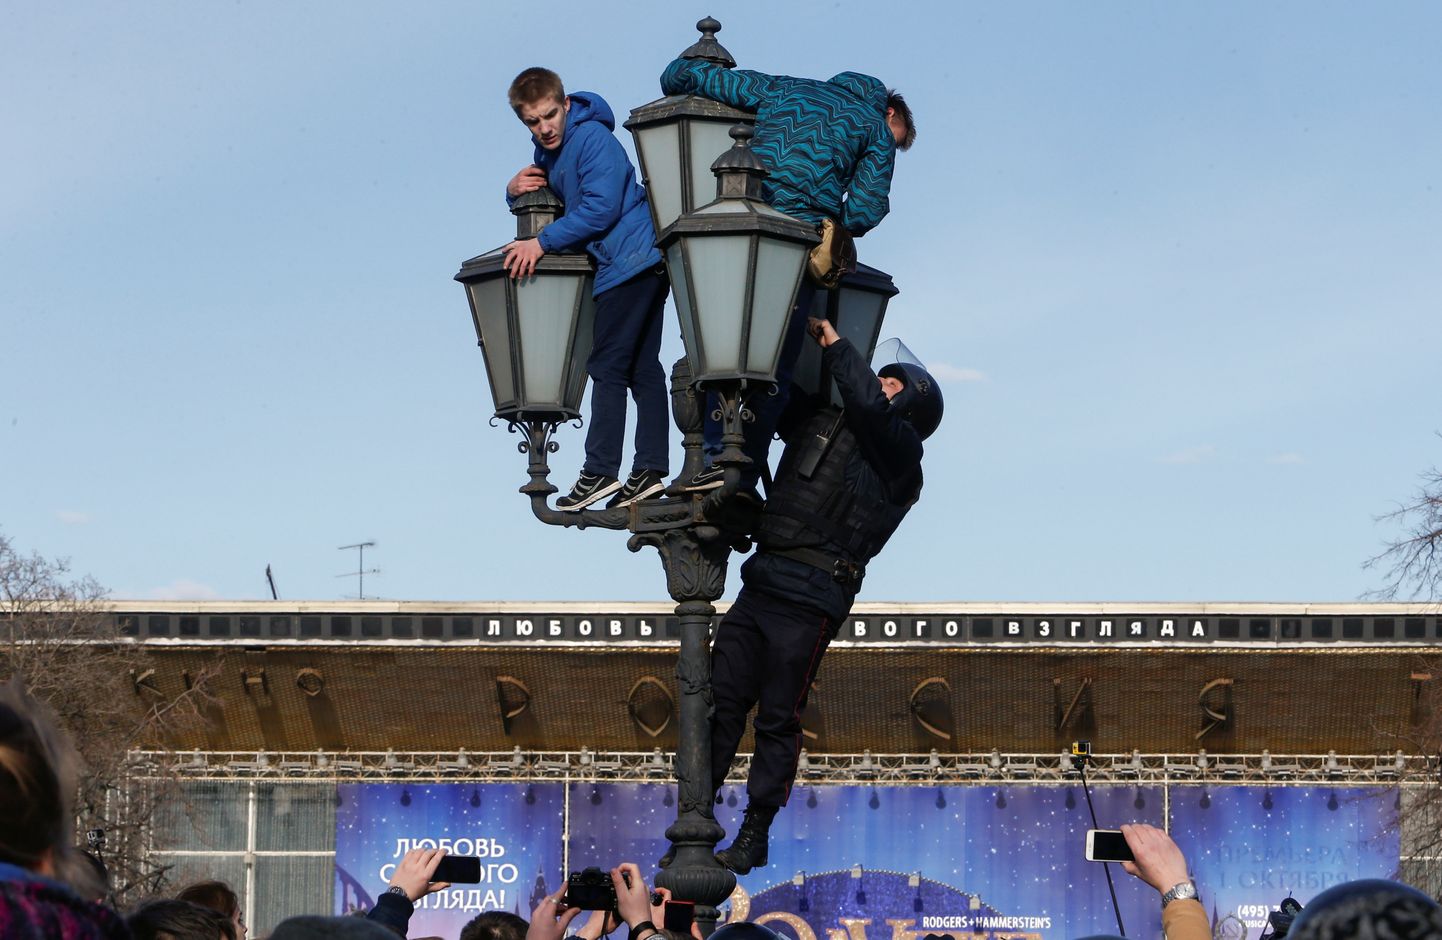 Фотографии молодых людей на Пушкинской площади облетели мировые СМИ и стали визуальным символом акции "Он вам не Димон".